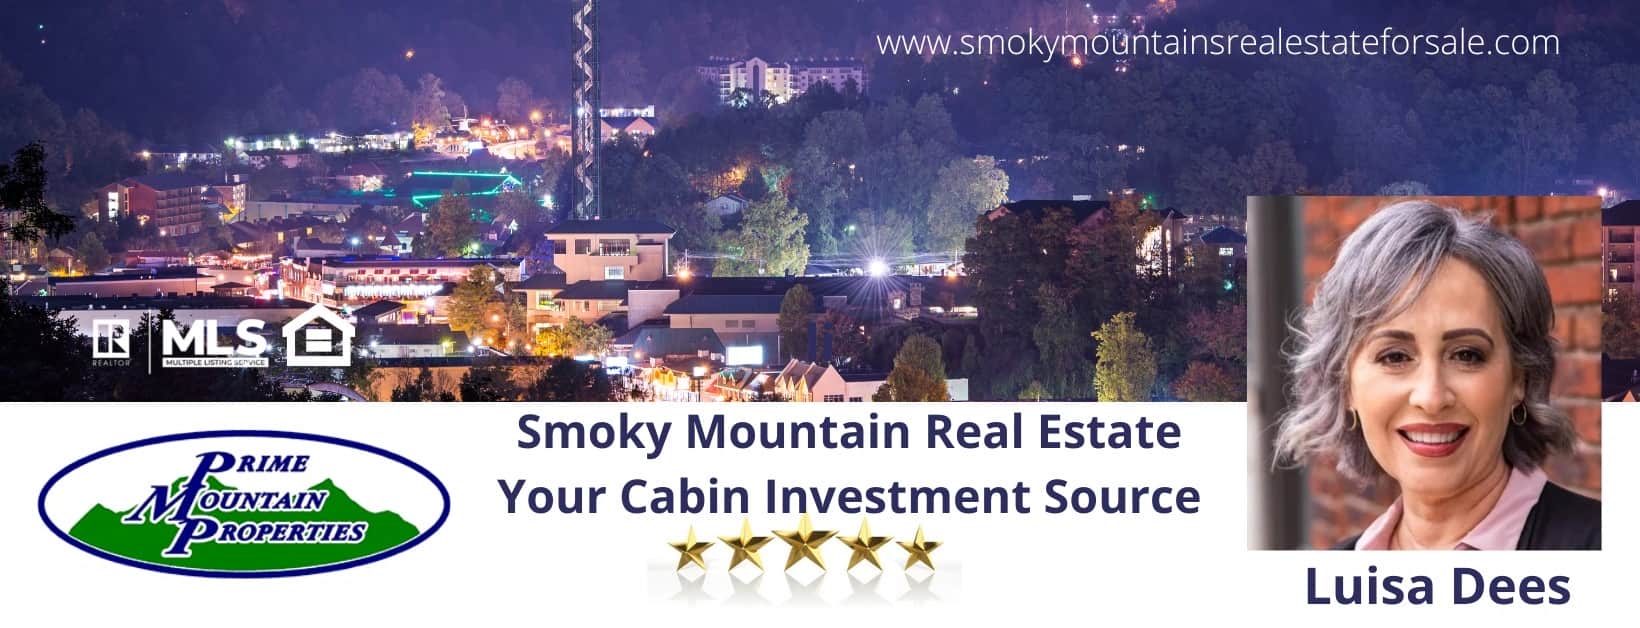 Luisa Dees Smoky Mountain Real Estate